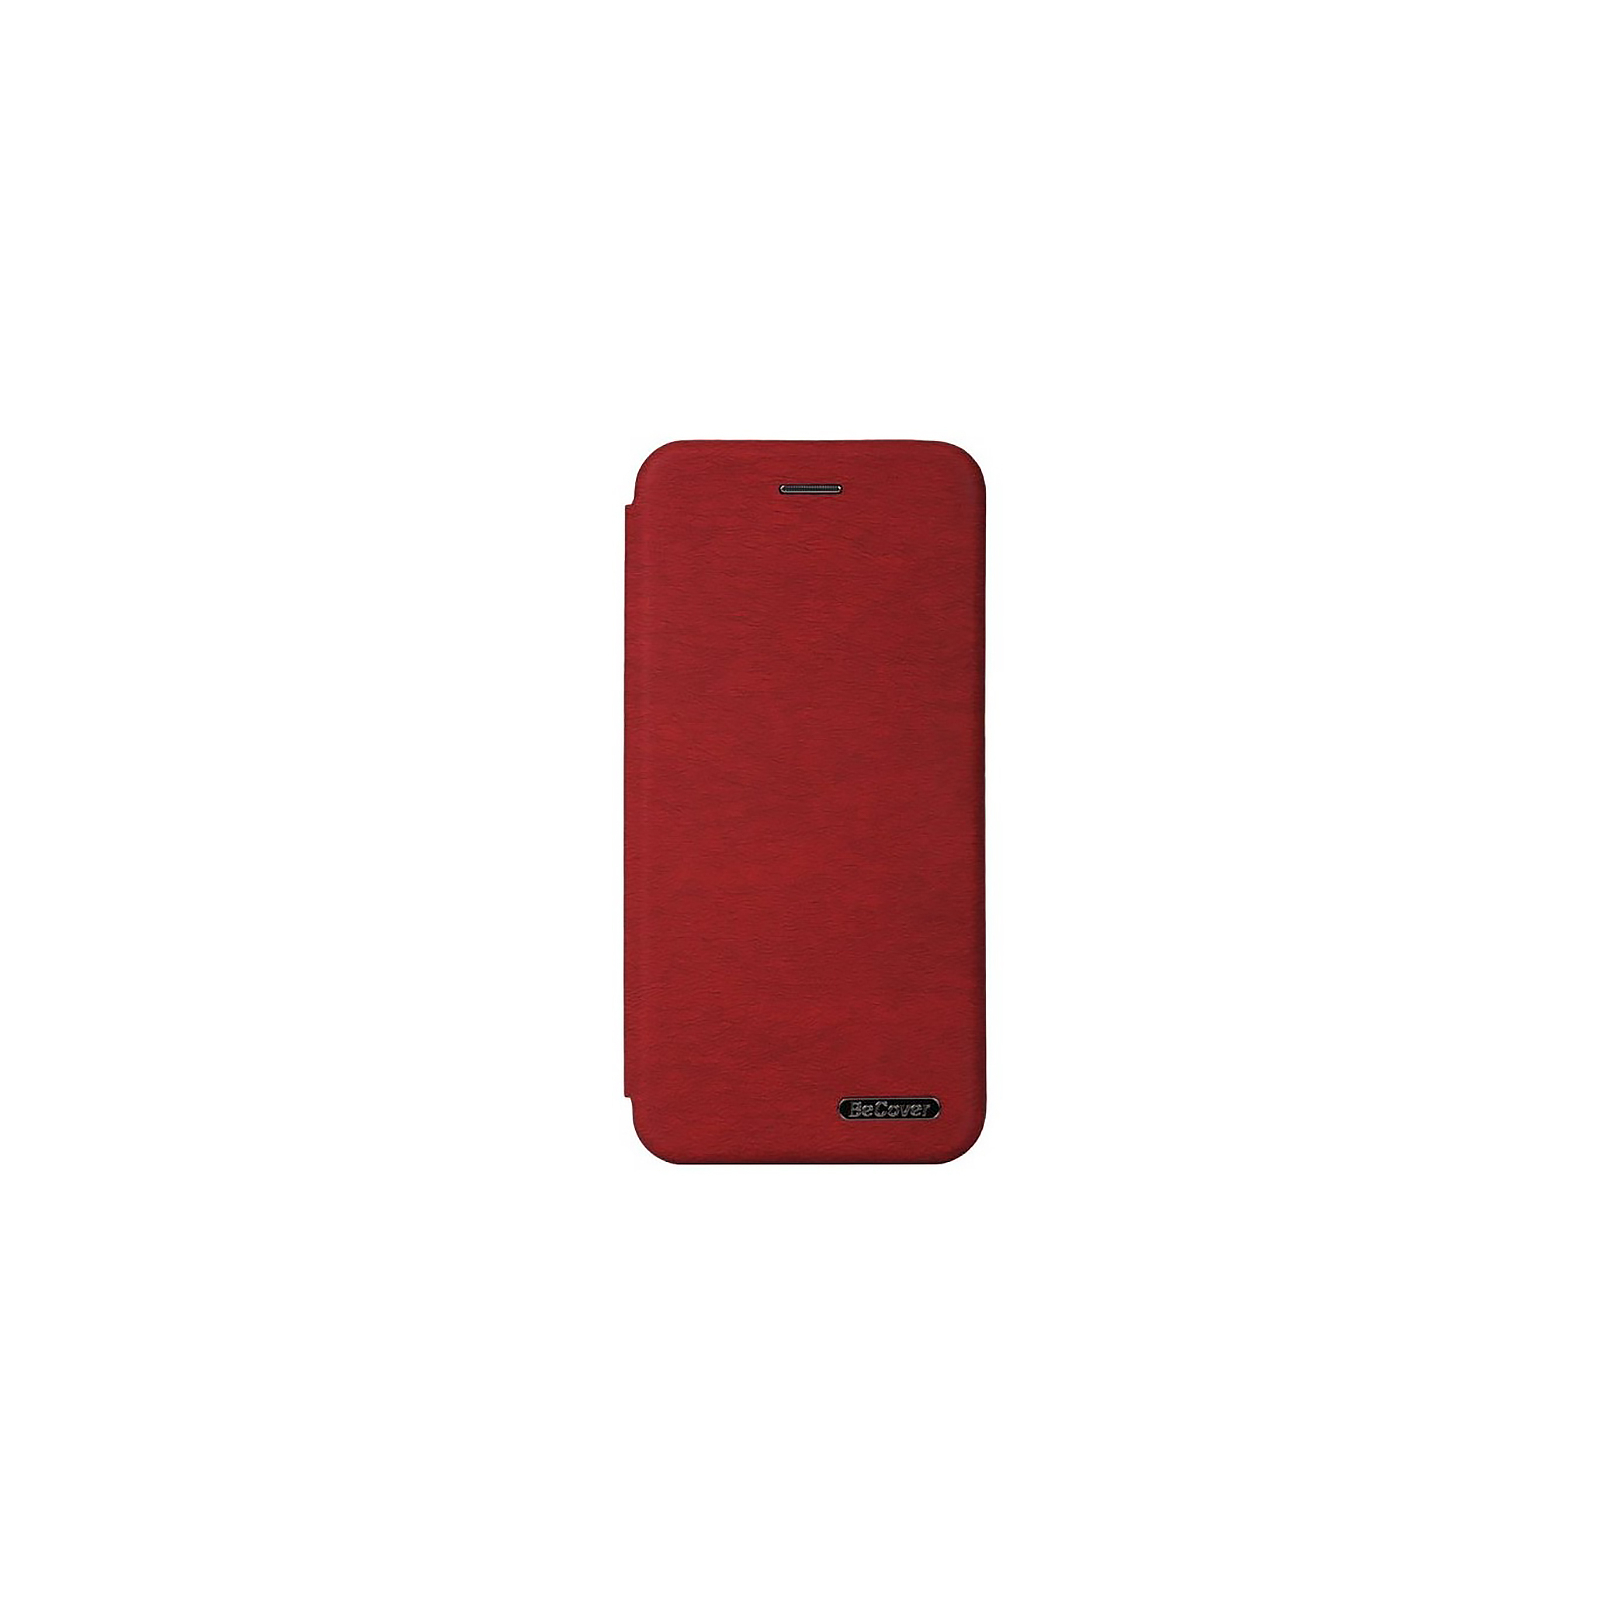 Чехол для мобильного телефона BeCover Exclusive Samsung Galaxy A04 SM-A045 Black (708899)